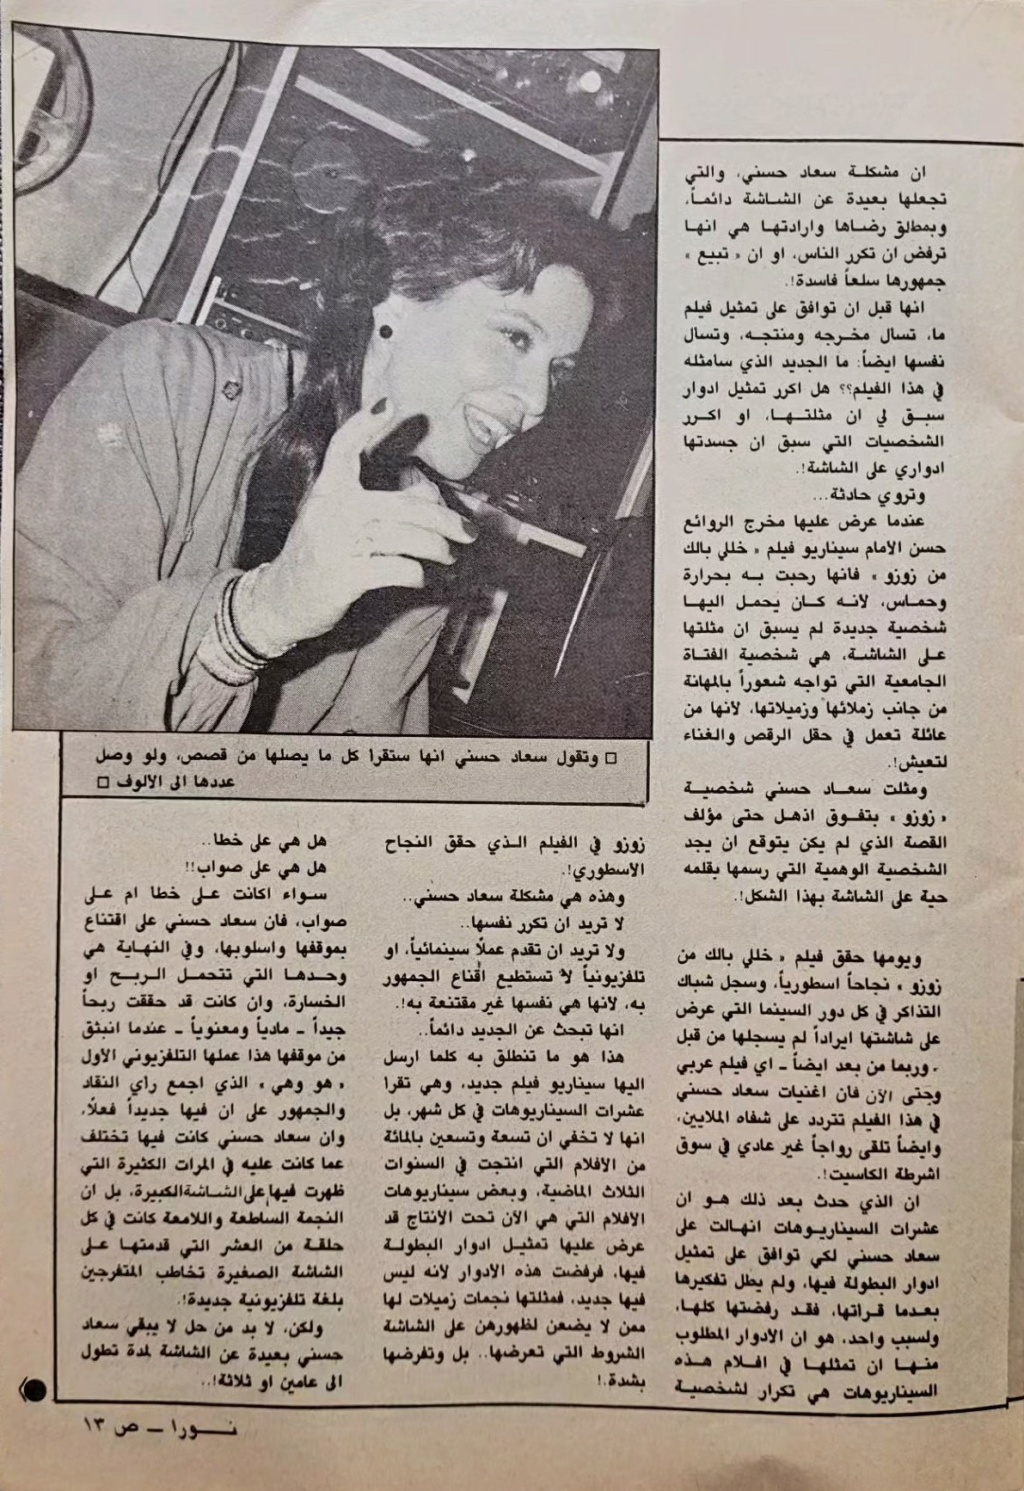 حوار - حوار صحفي : سعاد حسني .. تنادي أهل الموهبة وتبحث عندهم عن الجديد من القصص ! 1985 م 2104